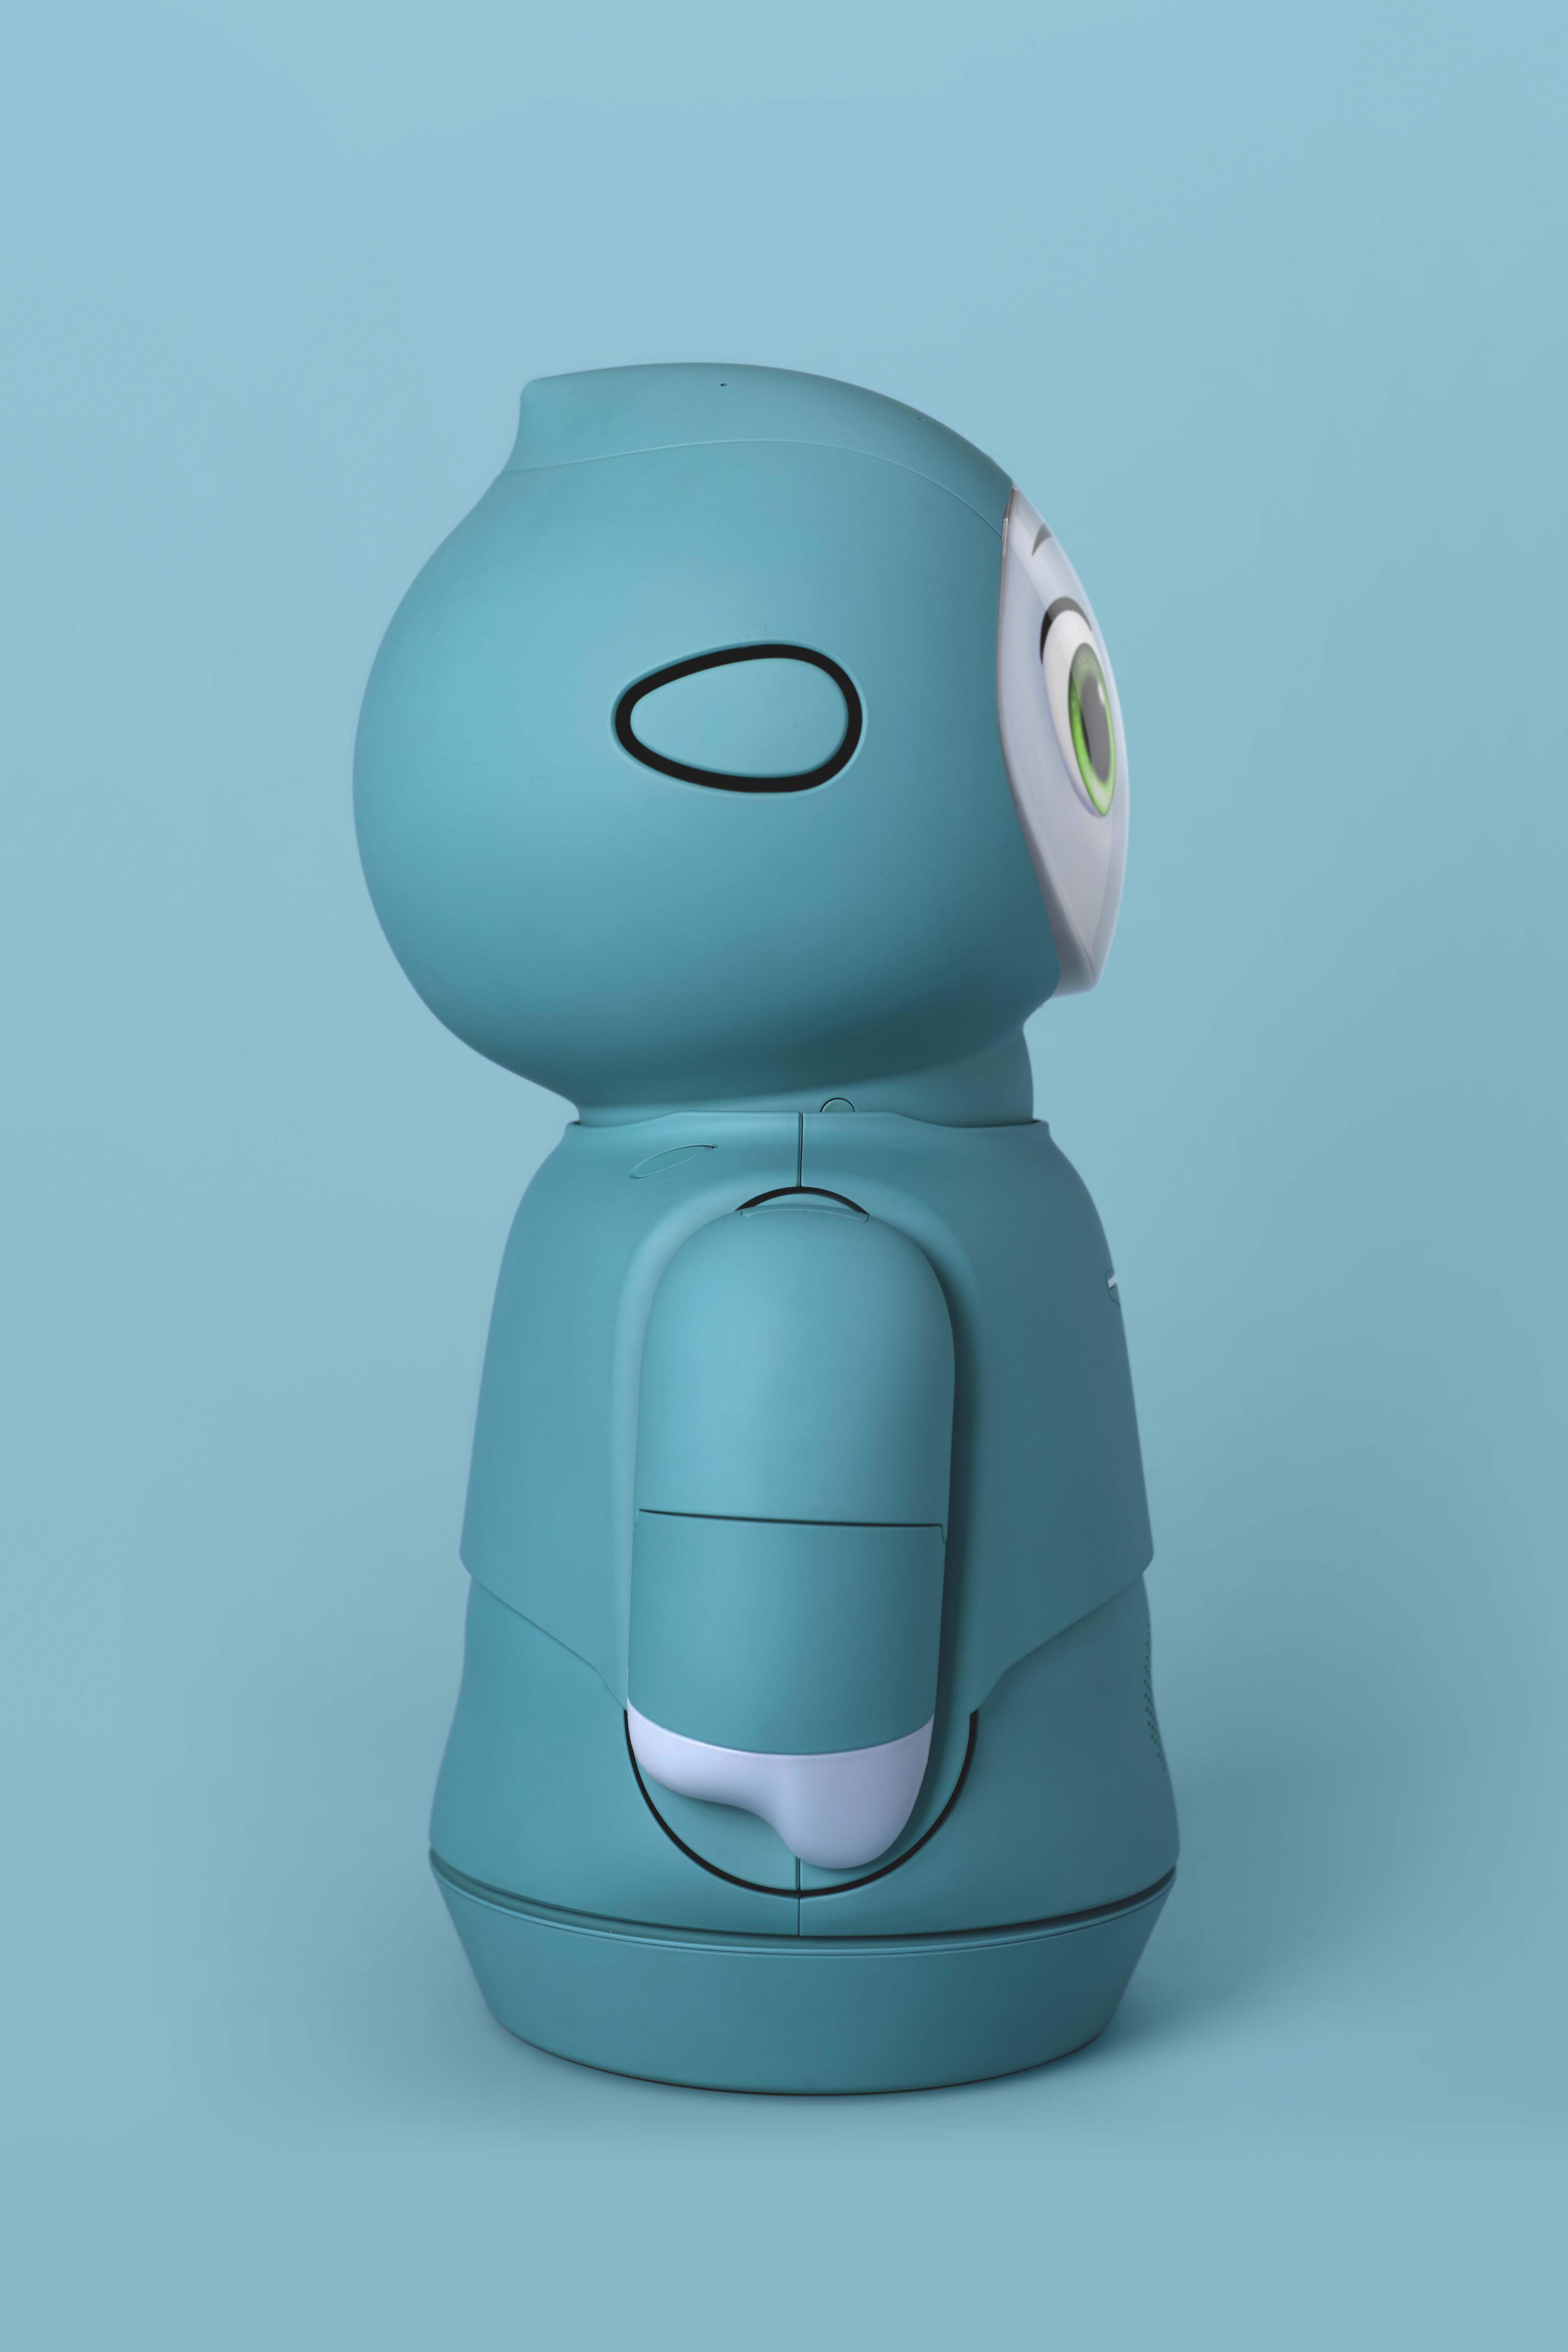 Moxie, A Revolutionary Child Development Robot 